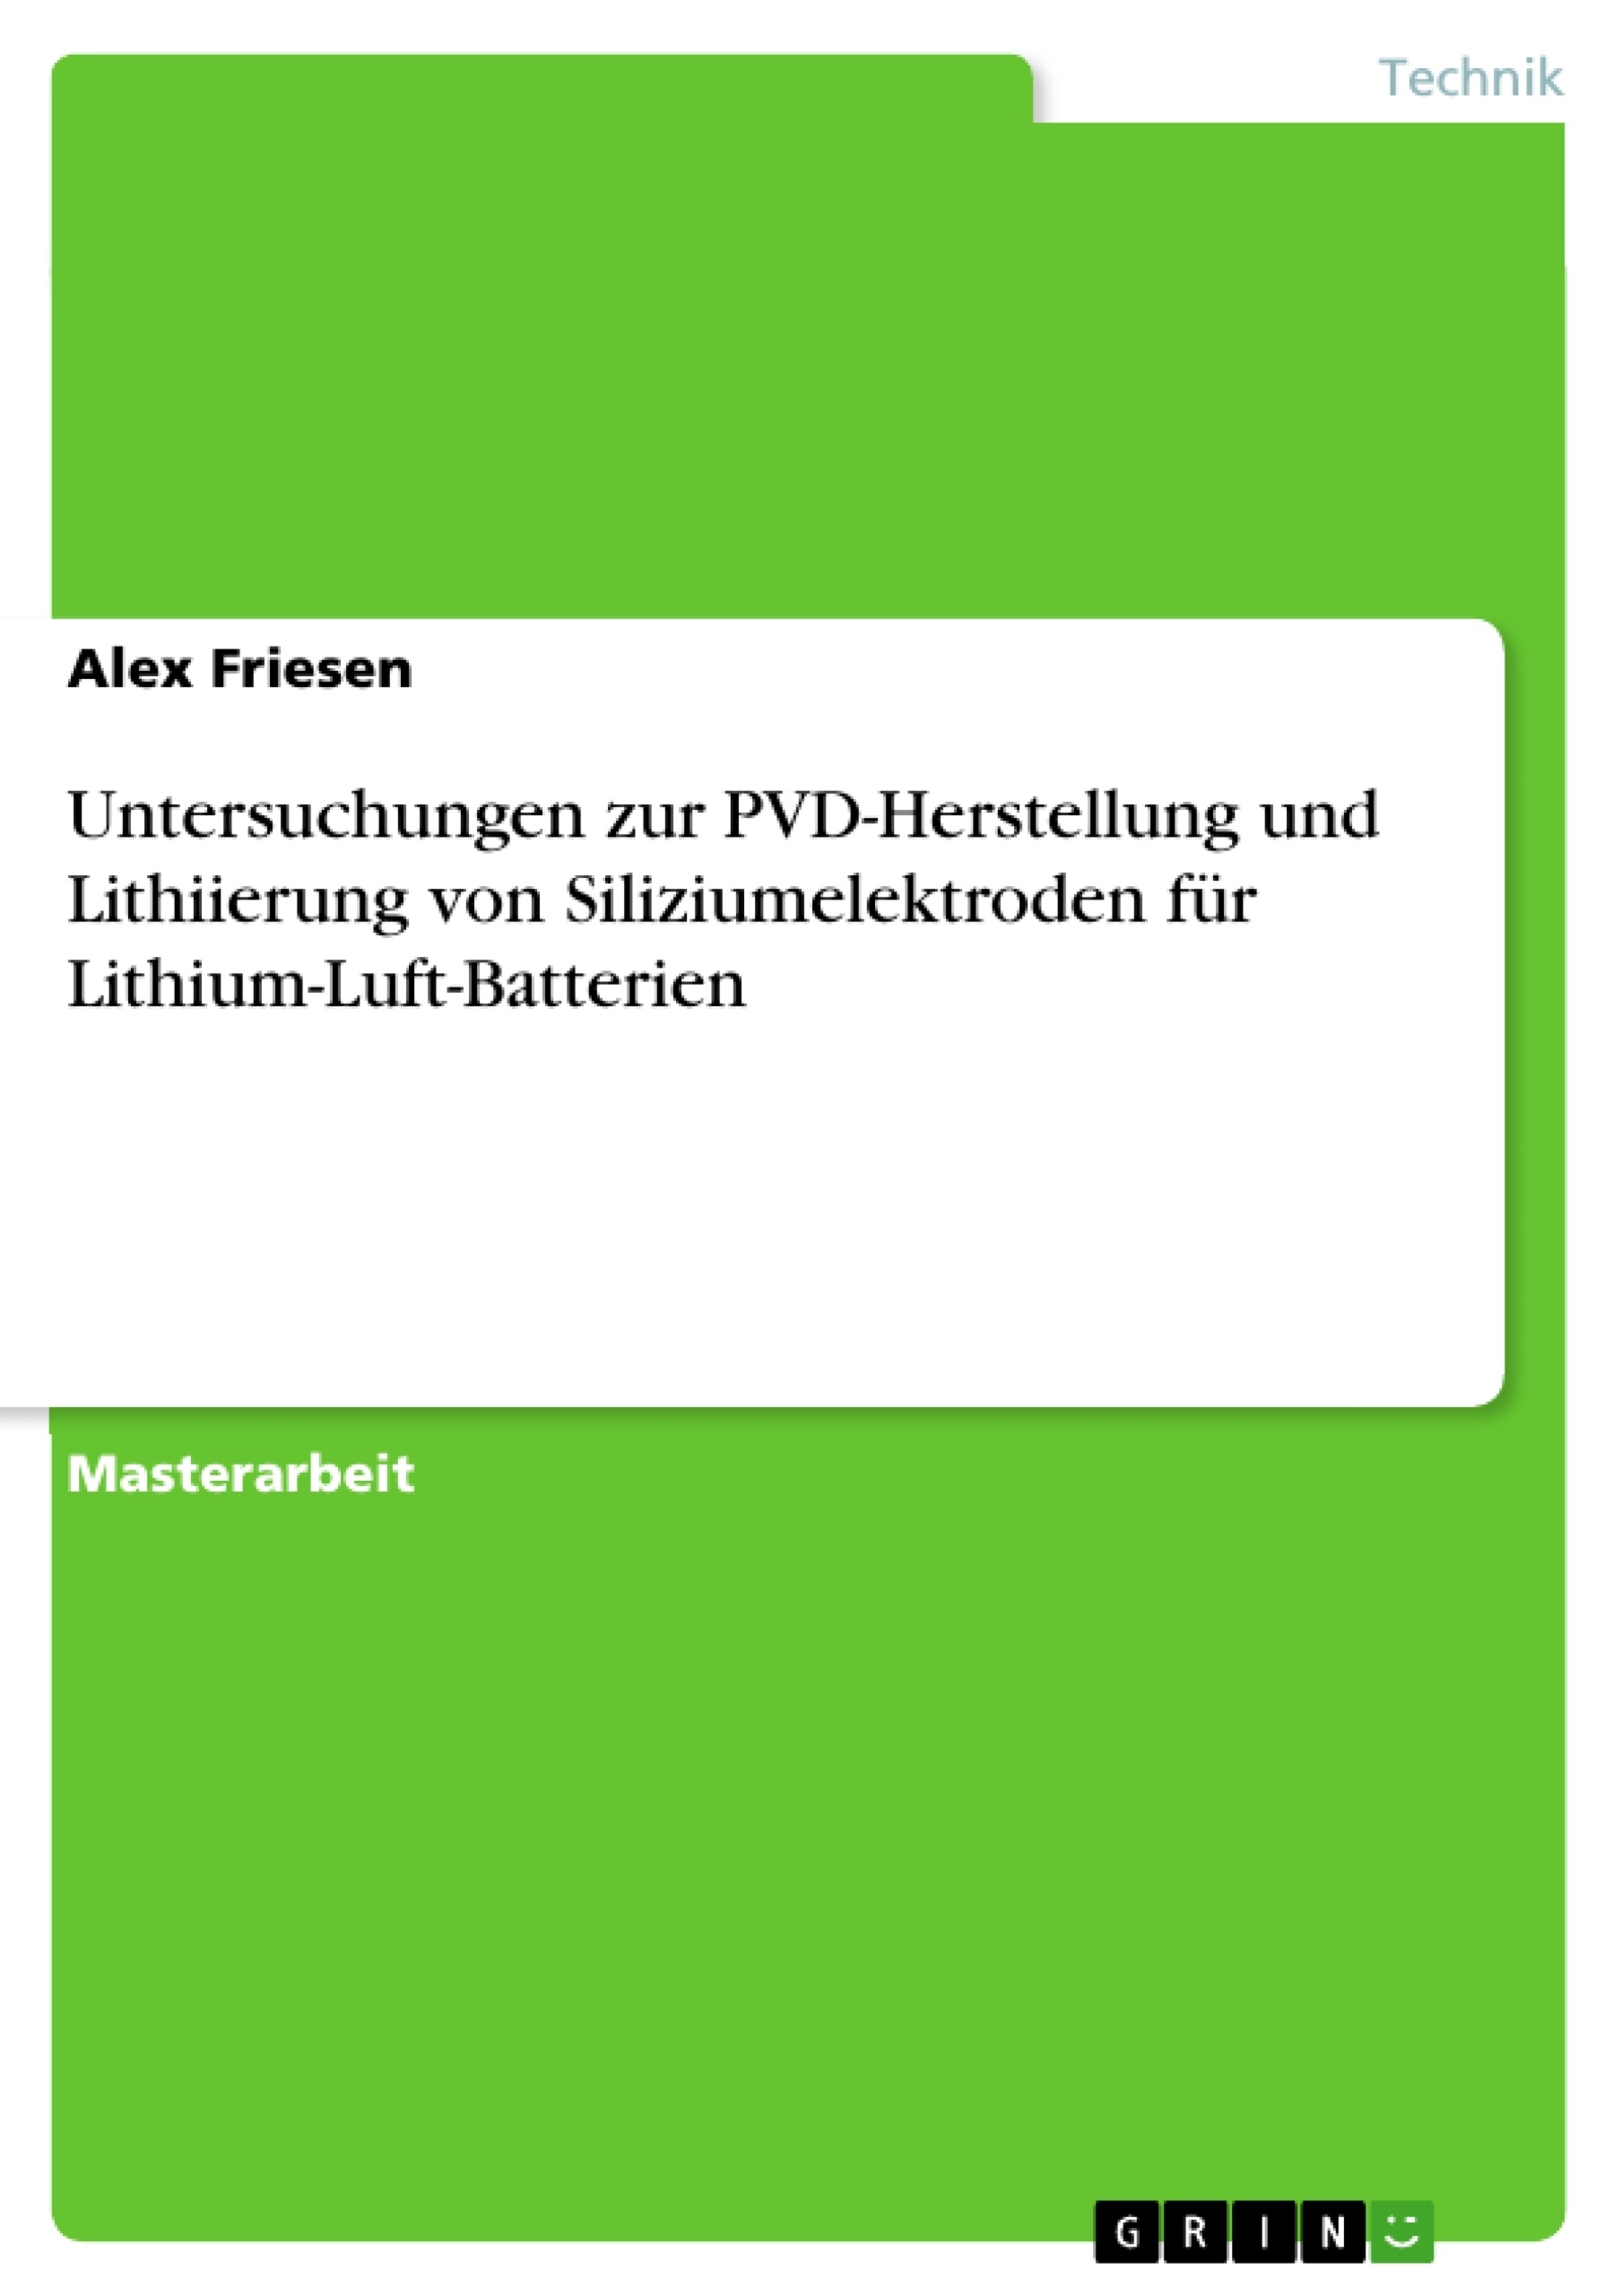 Title: Untersuchungen zur PVD-Herstellung und Lithiierung von Siliziumelektroden für Lithium-Luft-Batterien